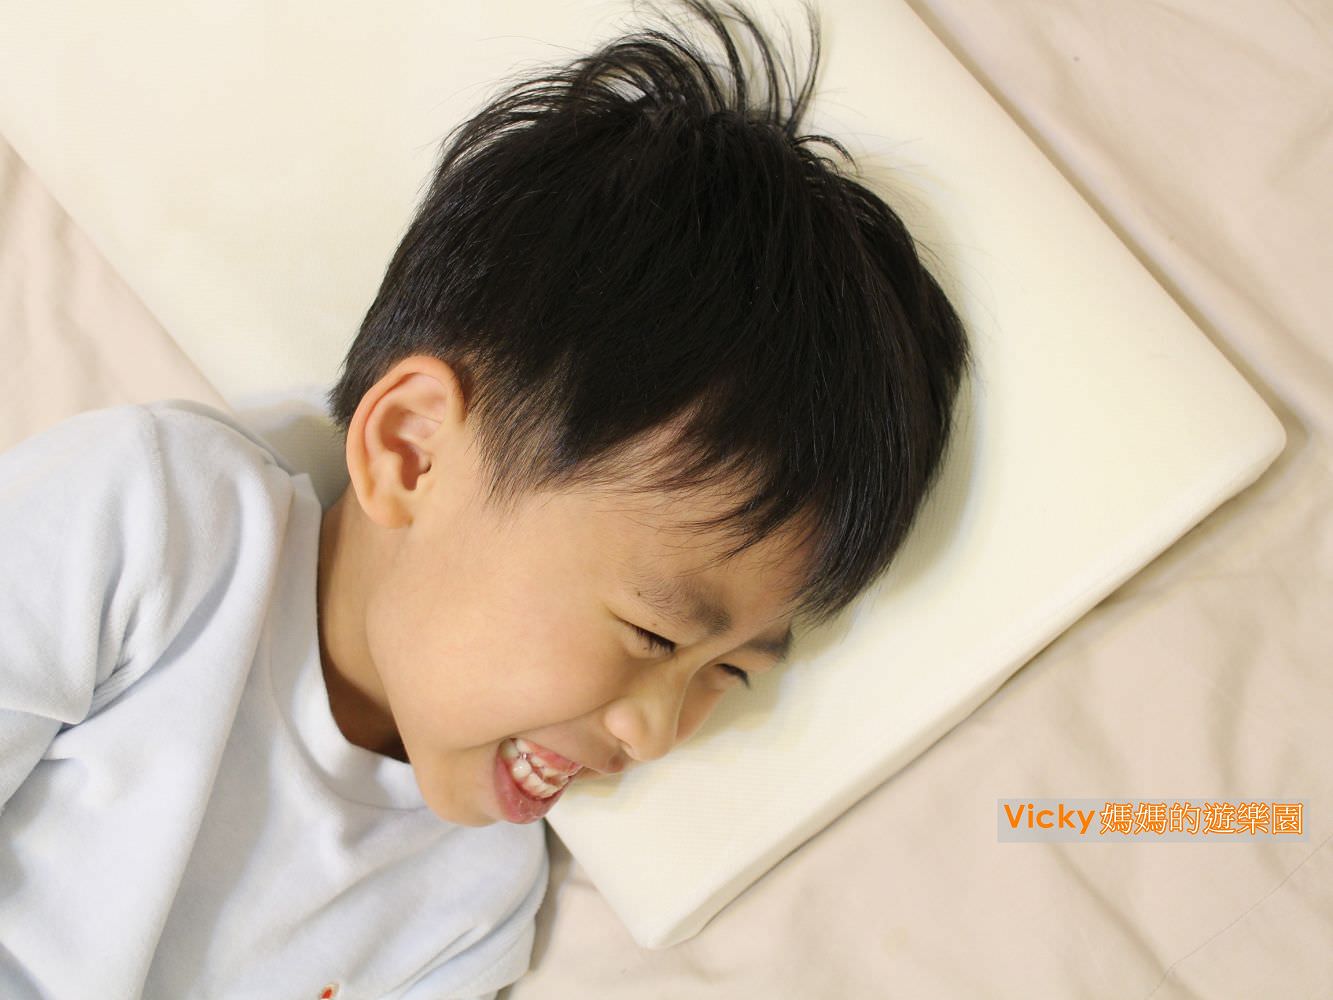 兒童記憶枕︱格蕾莎GreySa無毒環保記憶枕：兩段式枕頭超速系，讓孩子睡飽飽的小秘密